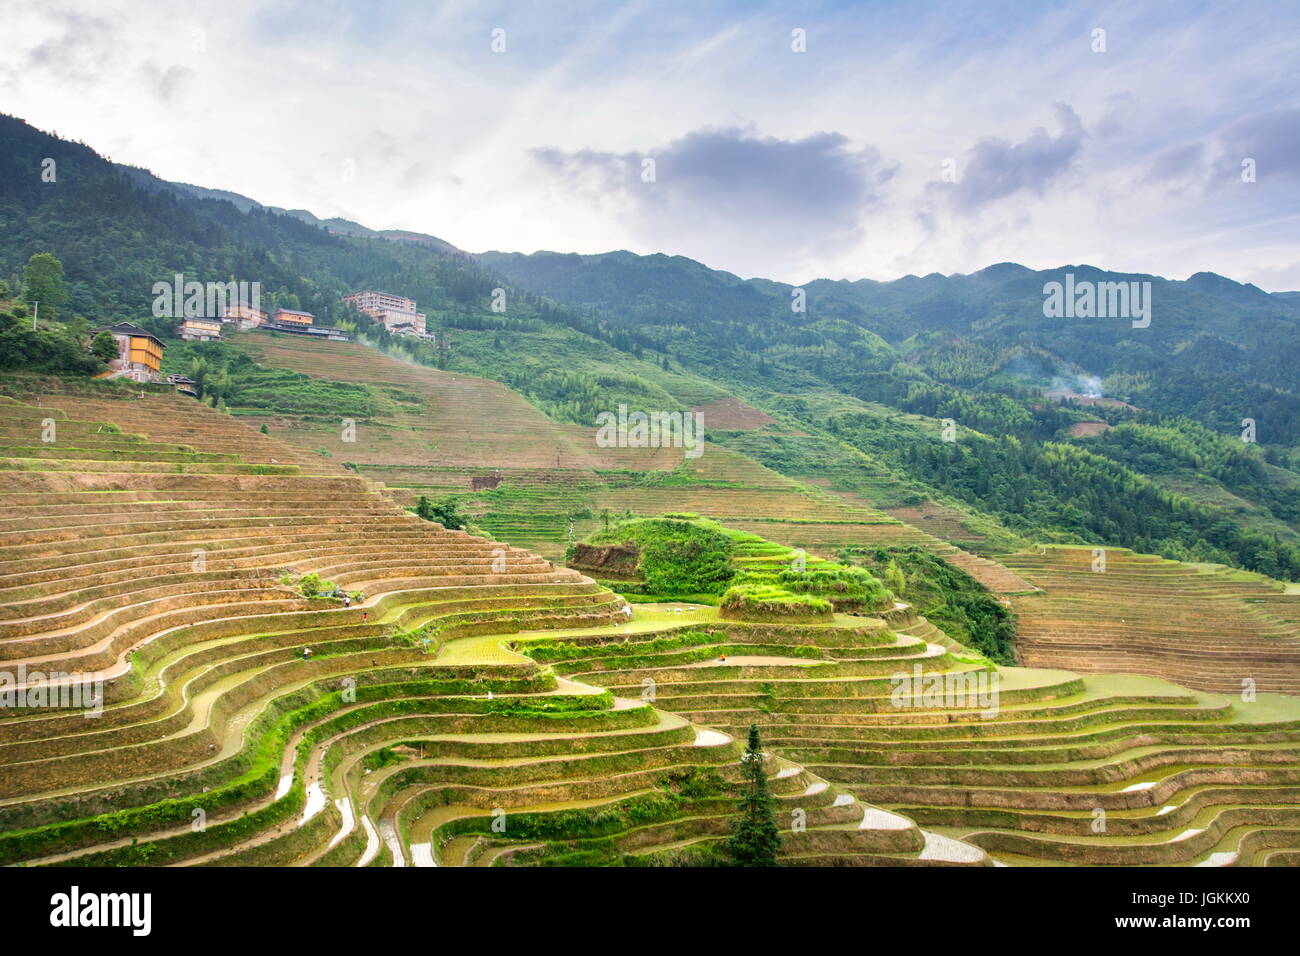 Terraced rice field in Longji, Guilin area, Guangxi China Stock Photo